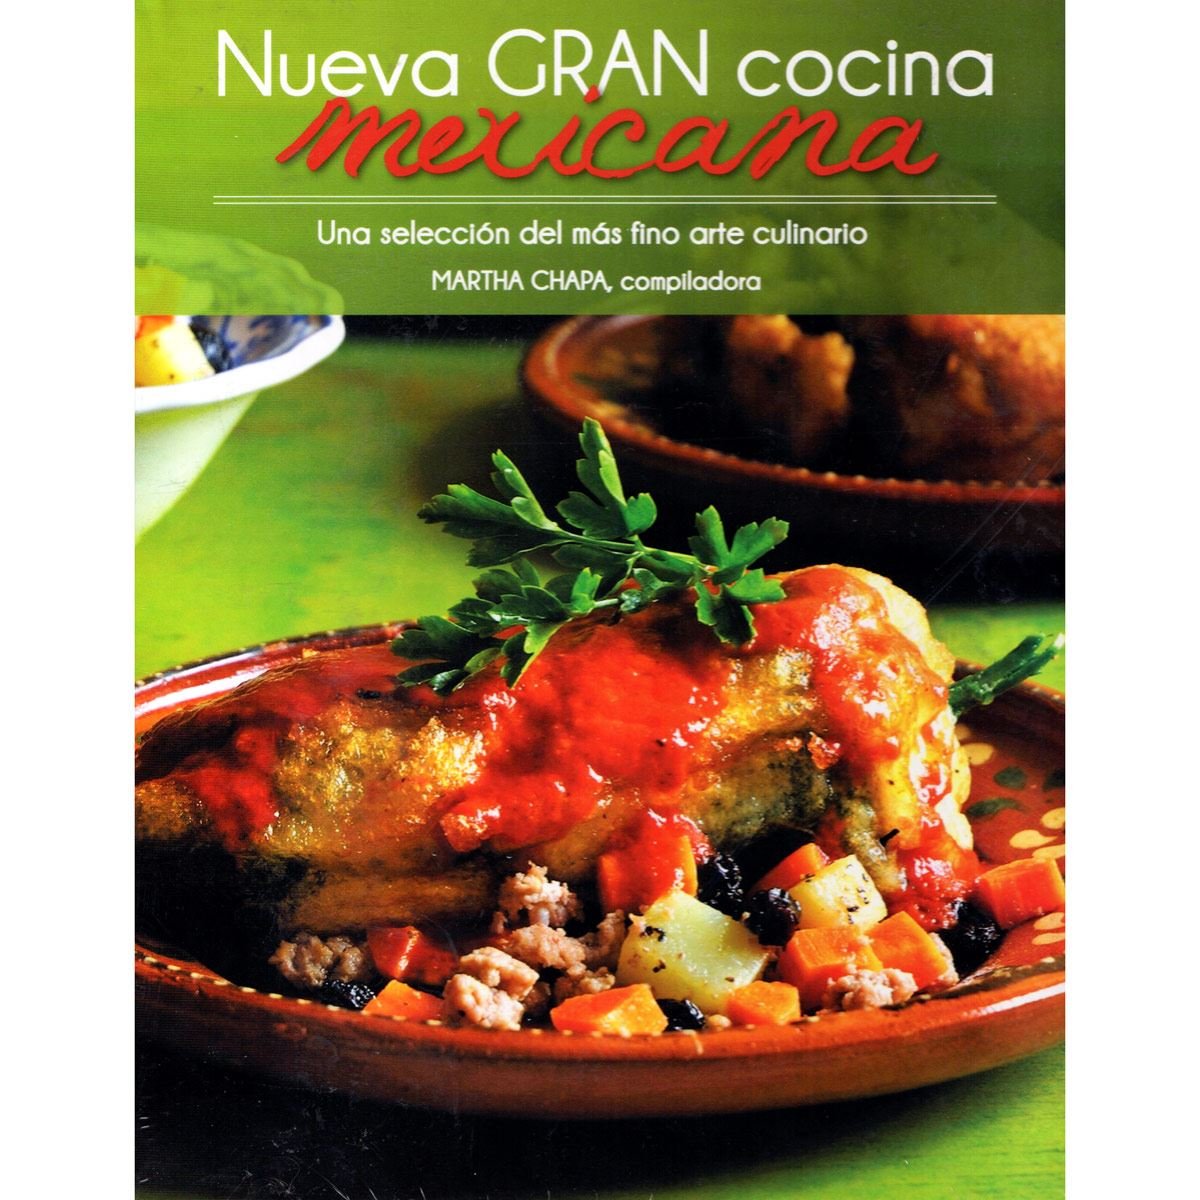 Nueva gran cocina mexicana (p.d.)